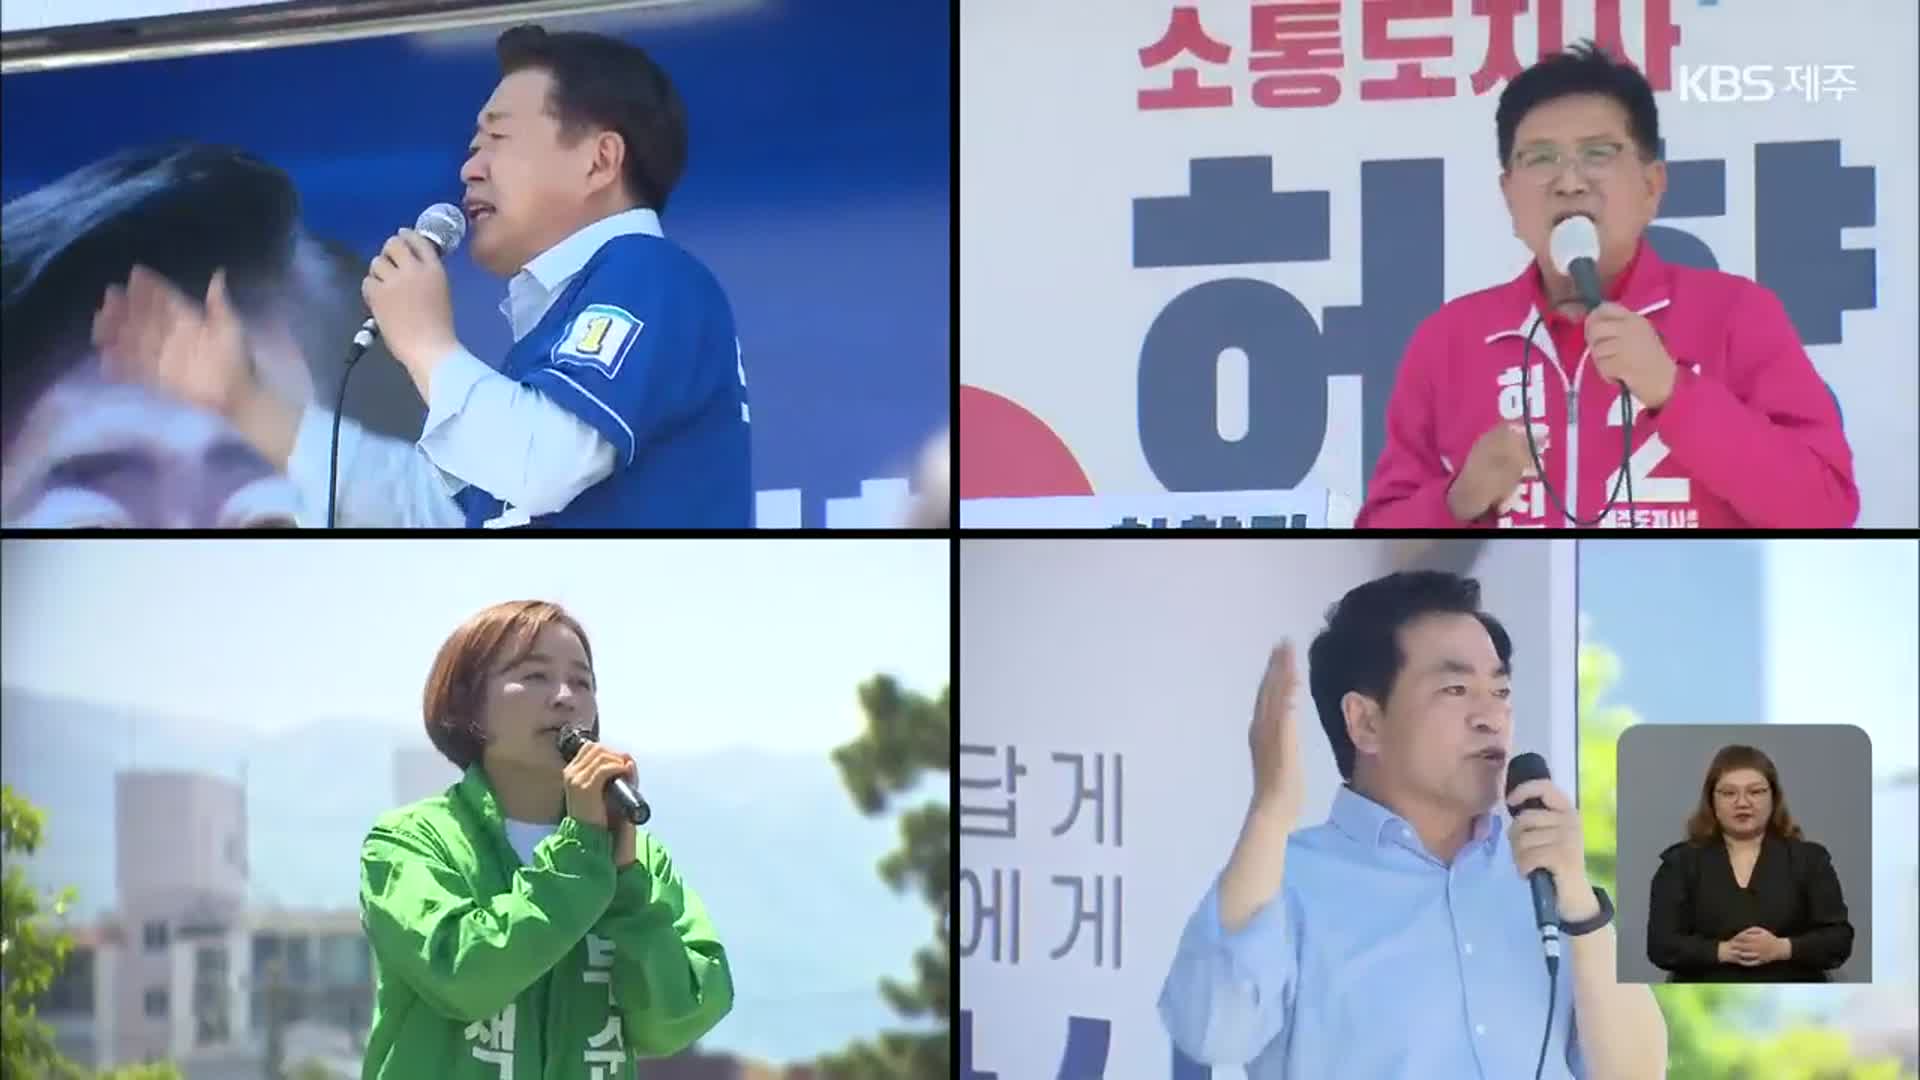 공식 선거운동 첫 휴일…“민심을 잡아라” 제주도지사 후보 오일장 격돌